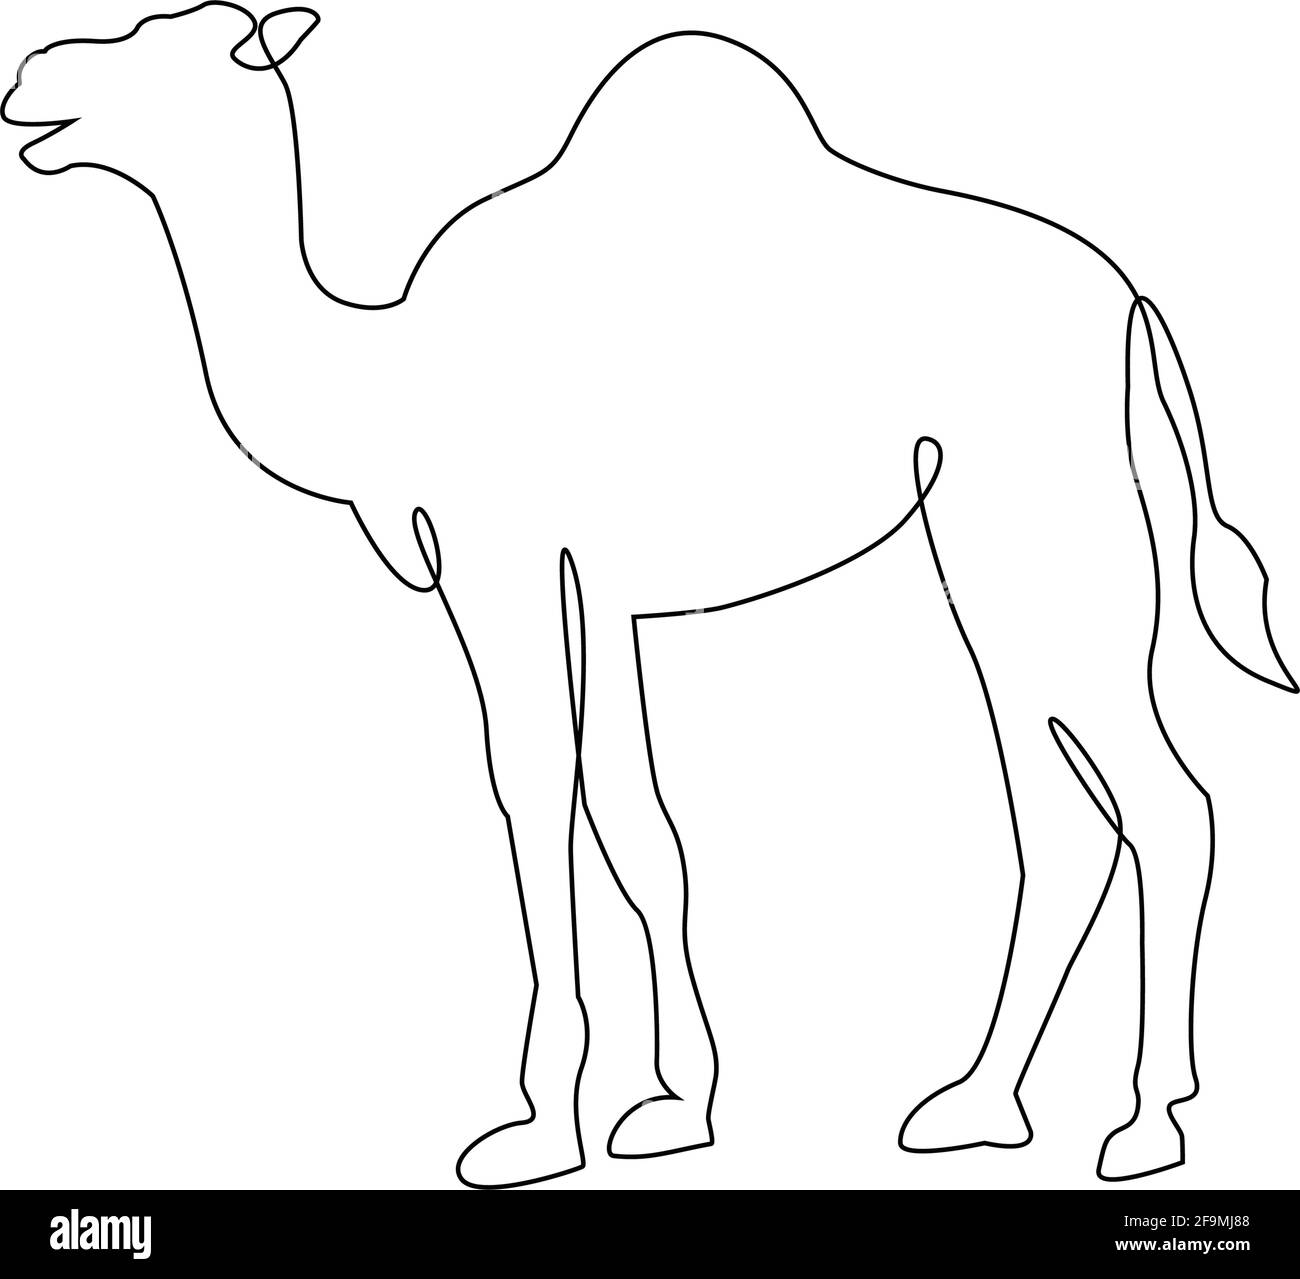 Icono de camello de una línea minimalista. Dibujo de líneas tatuaje de animales. Camel árabe Una línea dibujo a mano impresión de arte continuo, ilustración vectorial. Singlé libre Ilustración del Vector